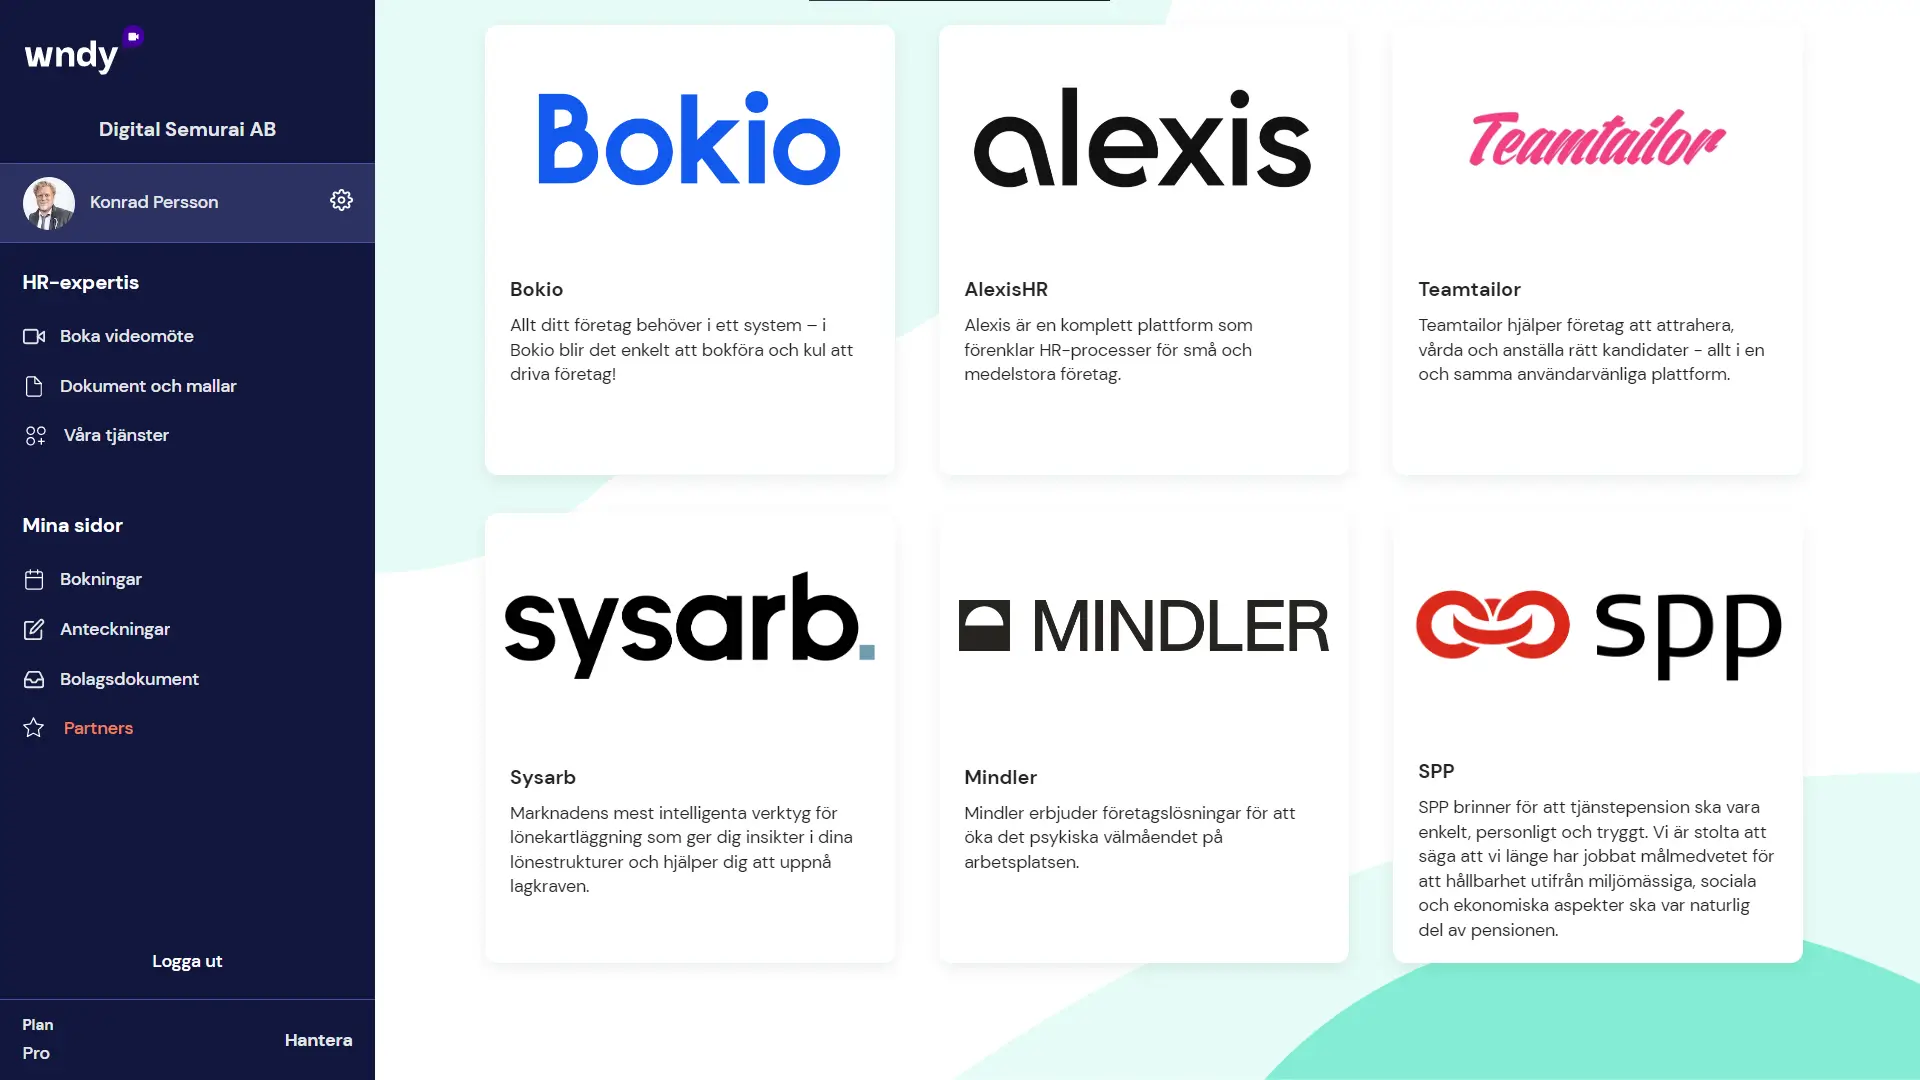 Partners listade inne i Wndy-appen. Bokio, alexis, teamtailor, sysarb, mindler, spp med flera.